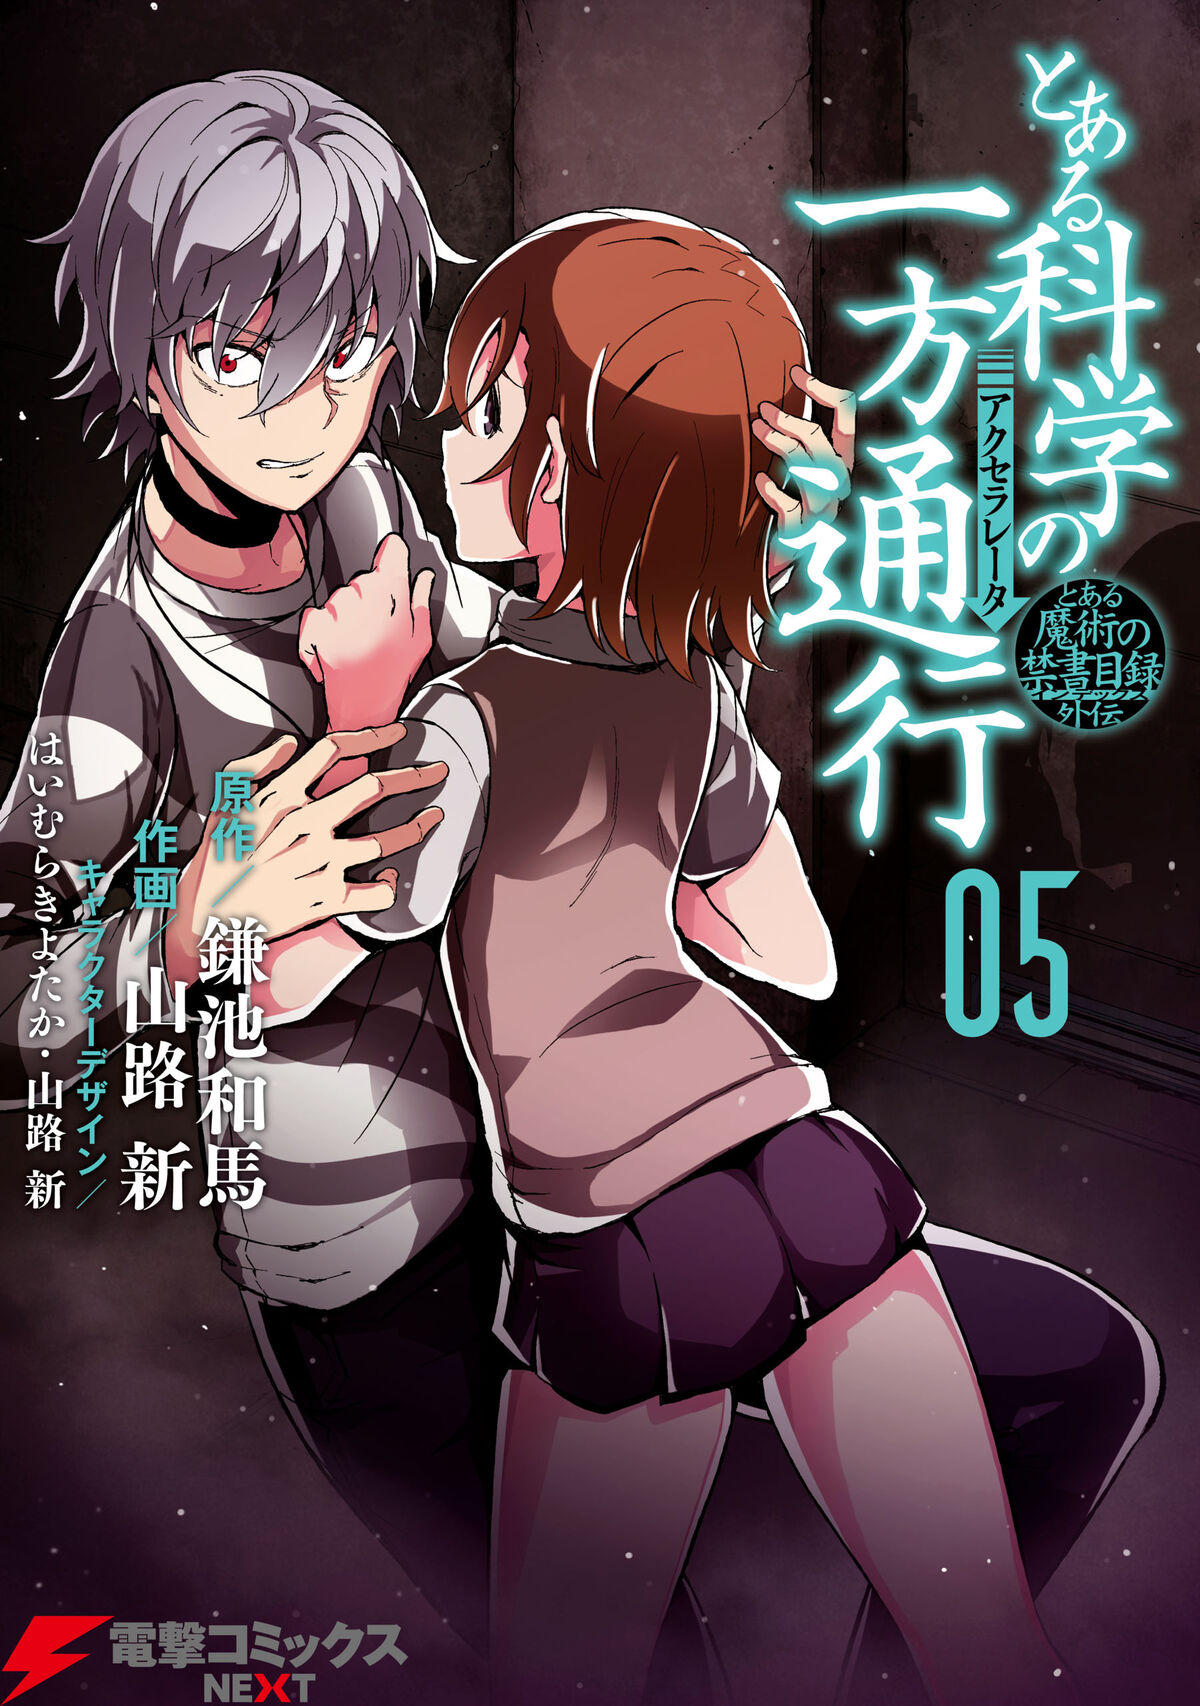 Toaru Kagaku no Accelerator Manga Chapter 019, Toaru Majutsu no Index Wiki